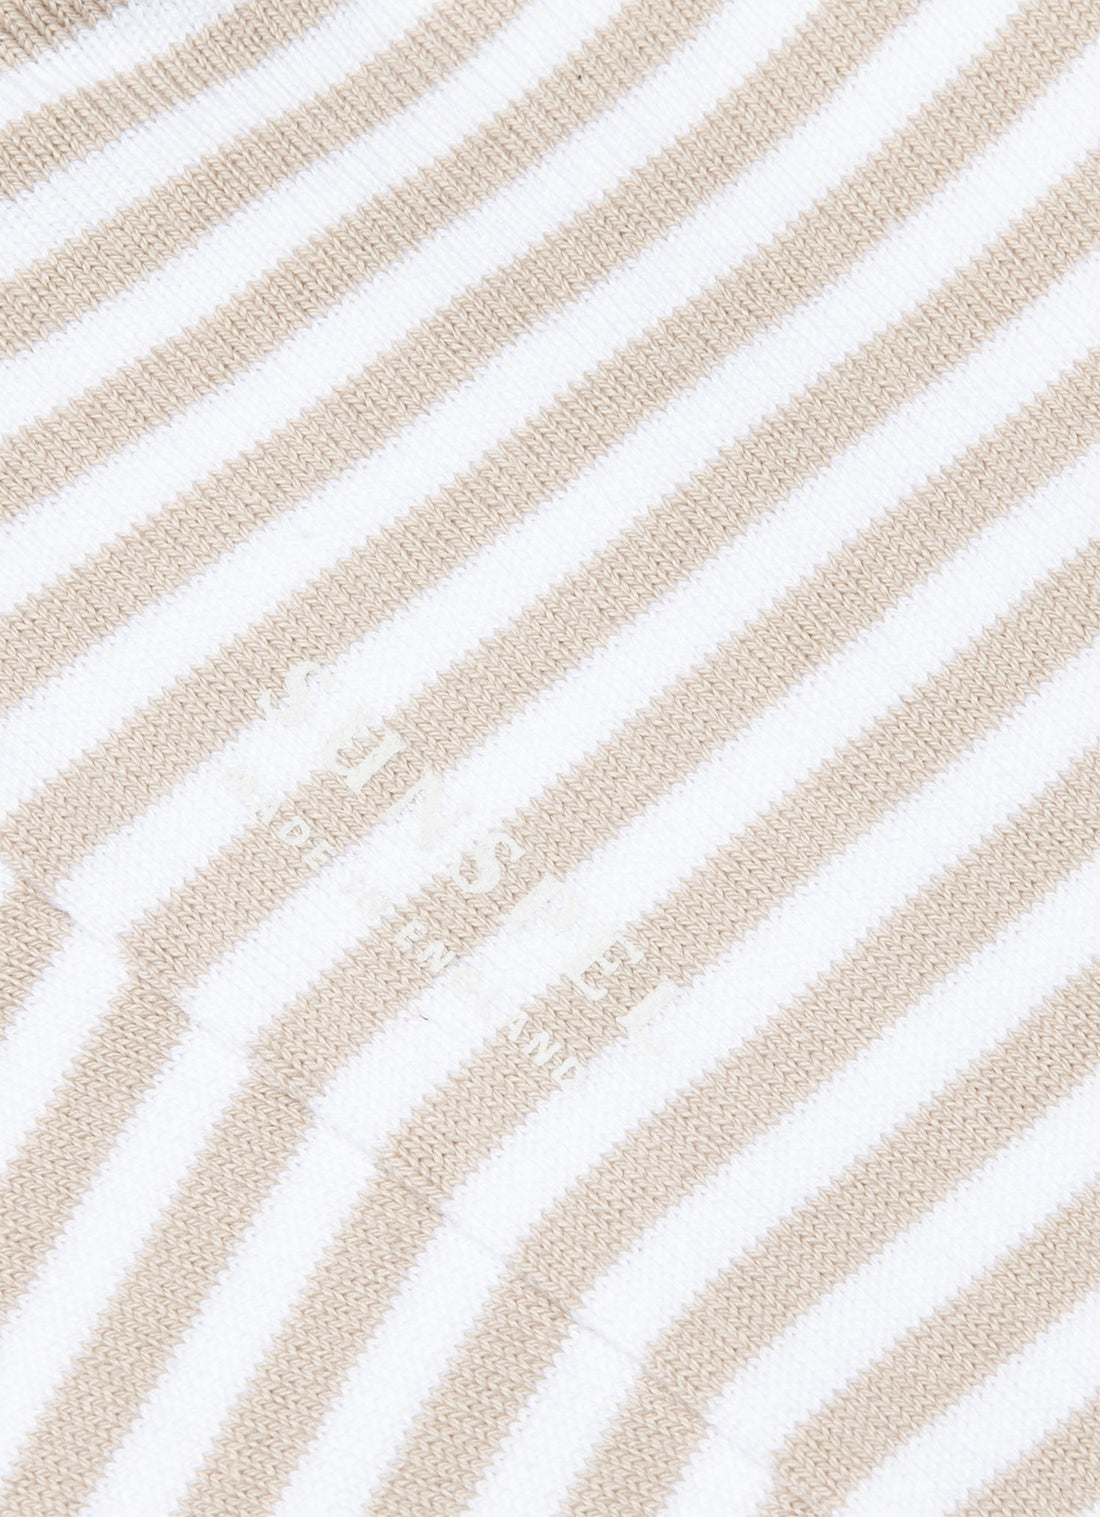 Men's Cotton Socks in White/Light Sand English Stripe